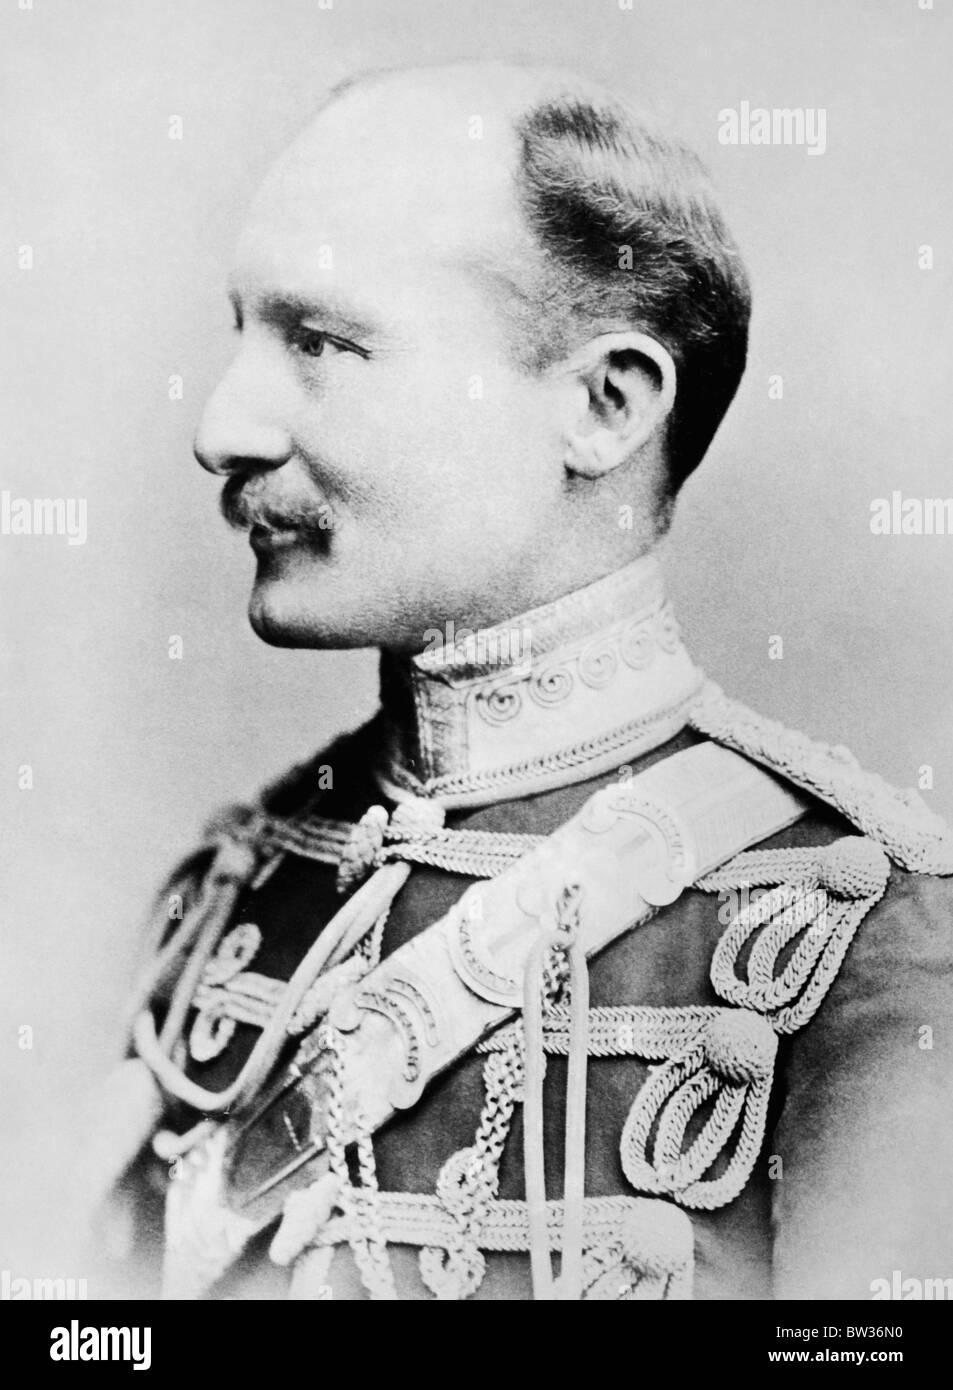 Vers 1900 photo Portrait du général Robert Baden-Powell (1857 - 1941) - soldat britannique et fondateur du Mouvement Scout. Banque D'Images